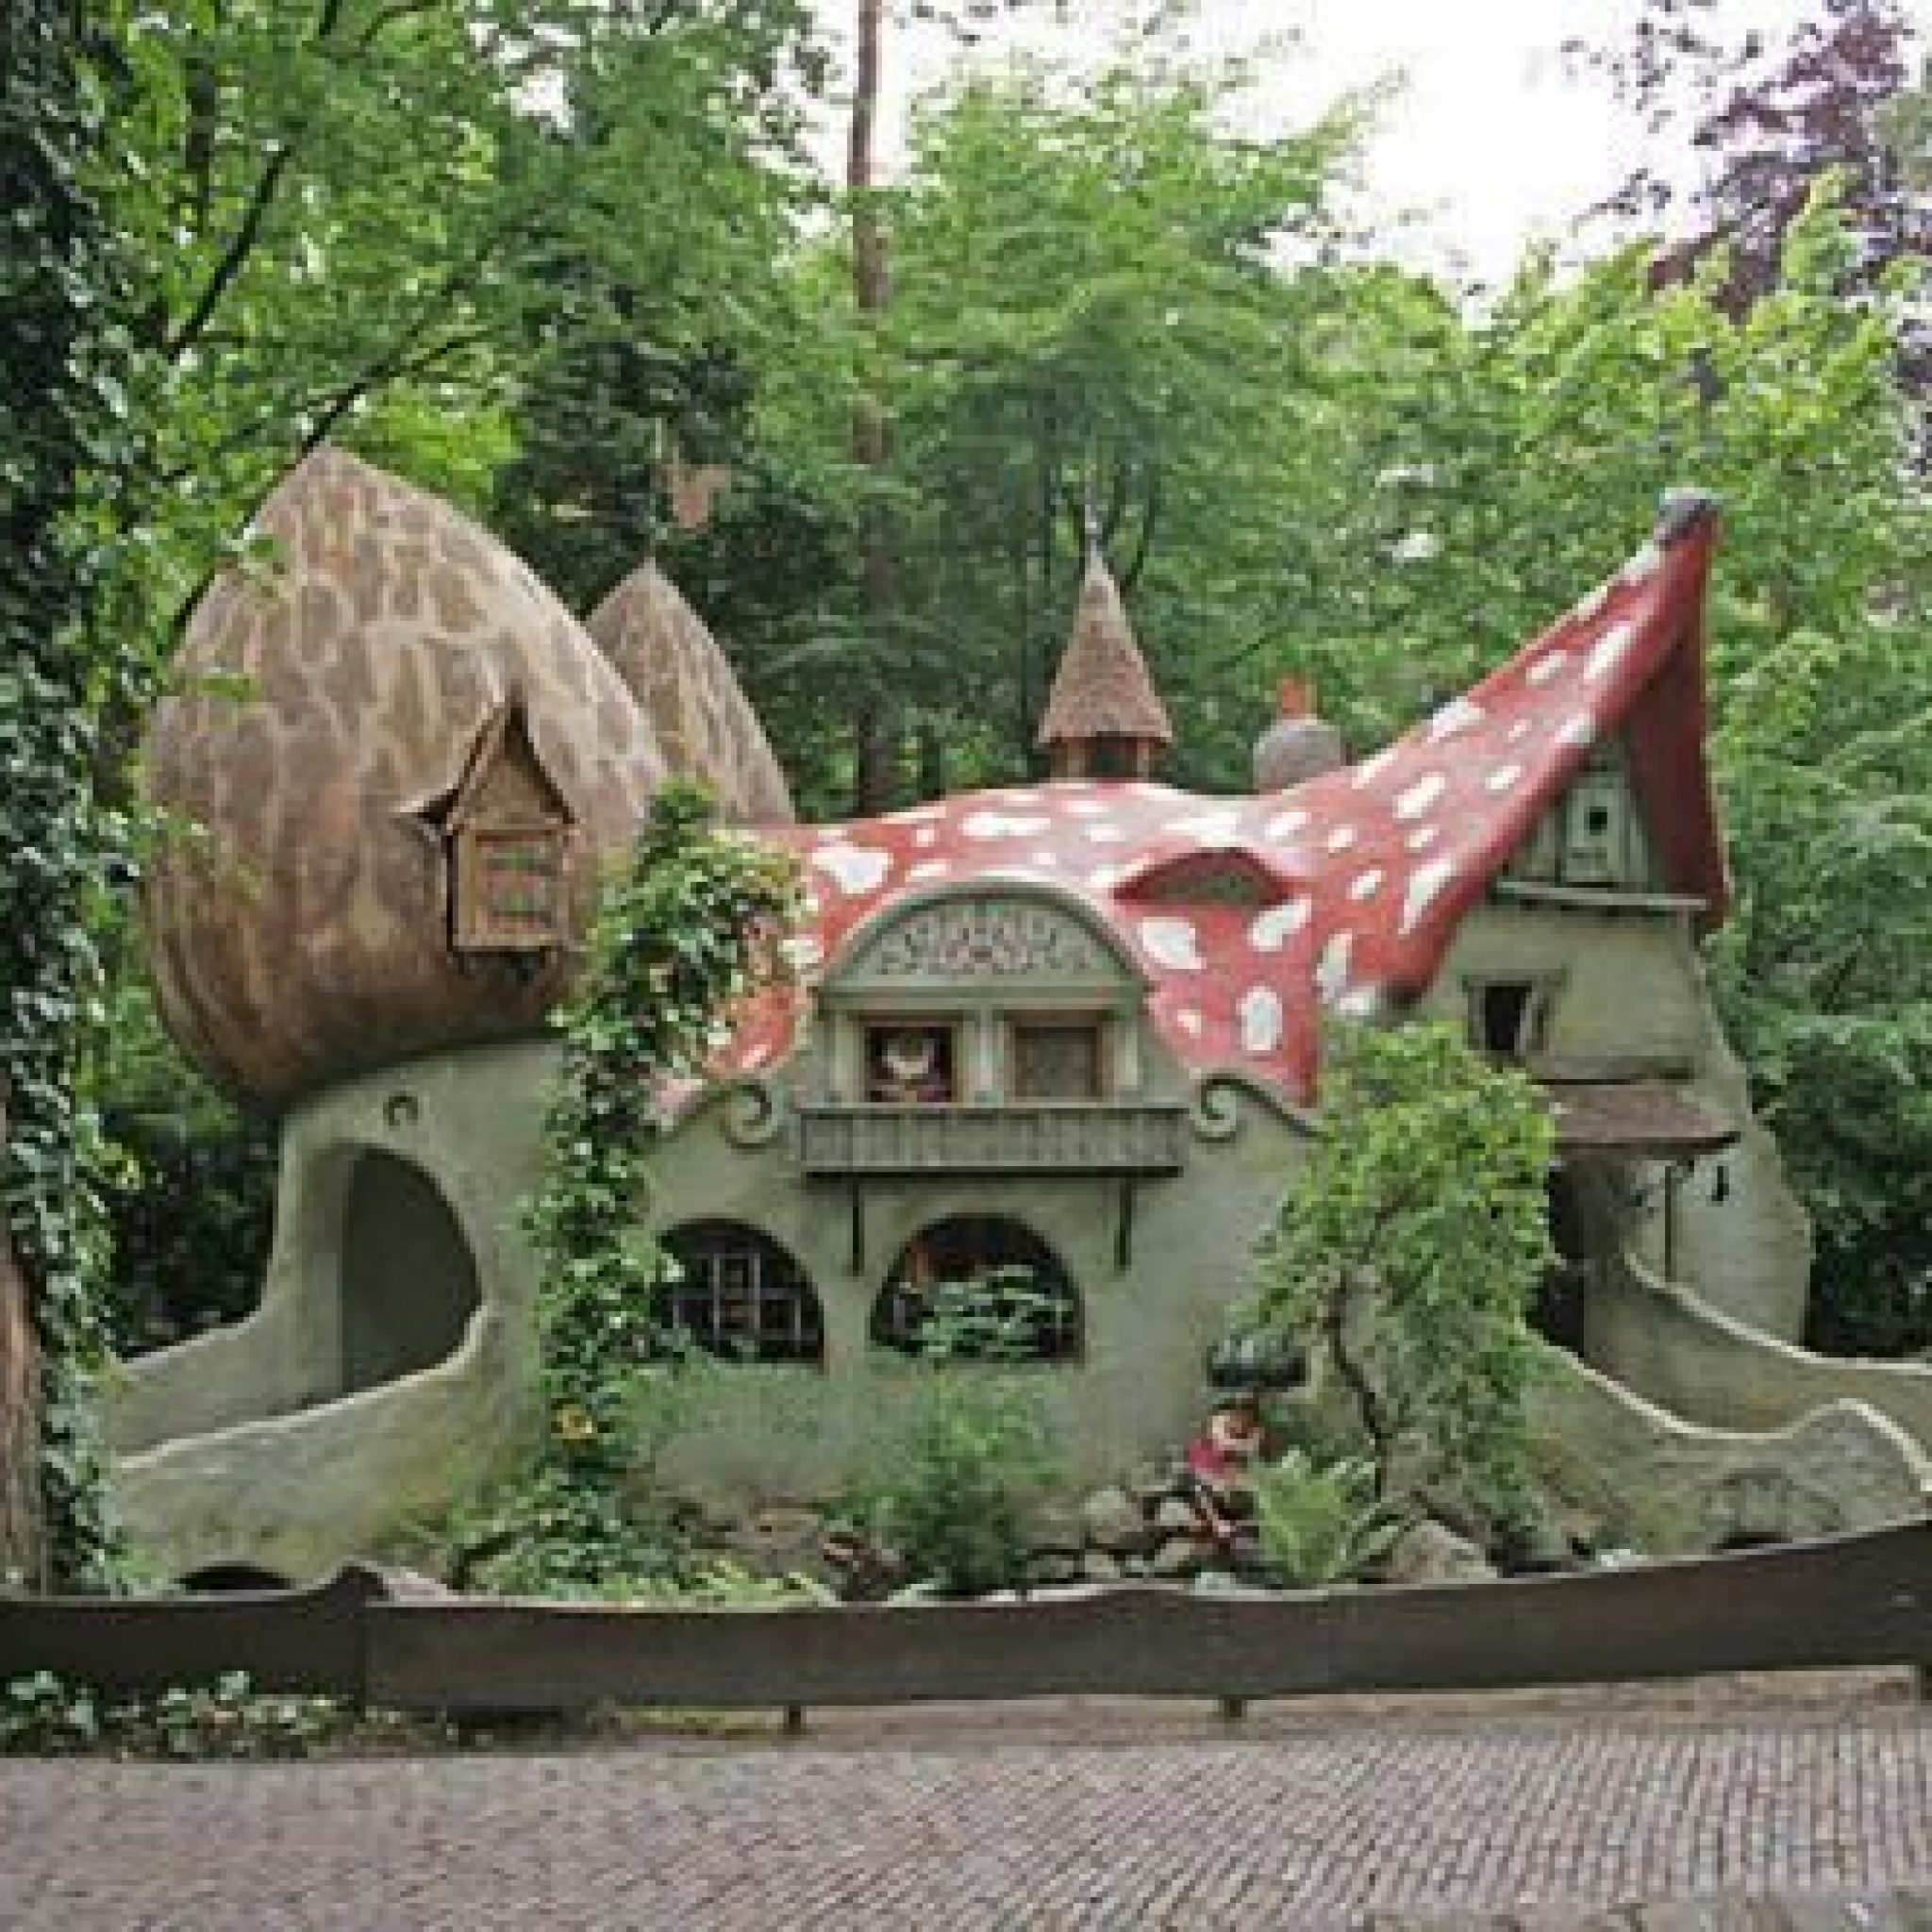 Необычный сказочный дом